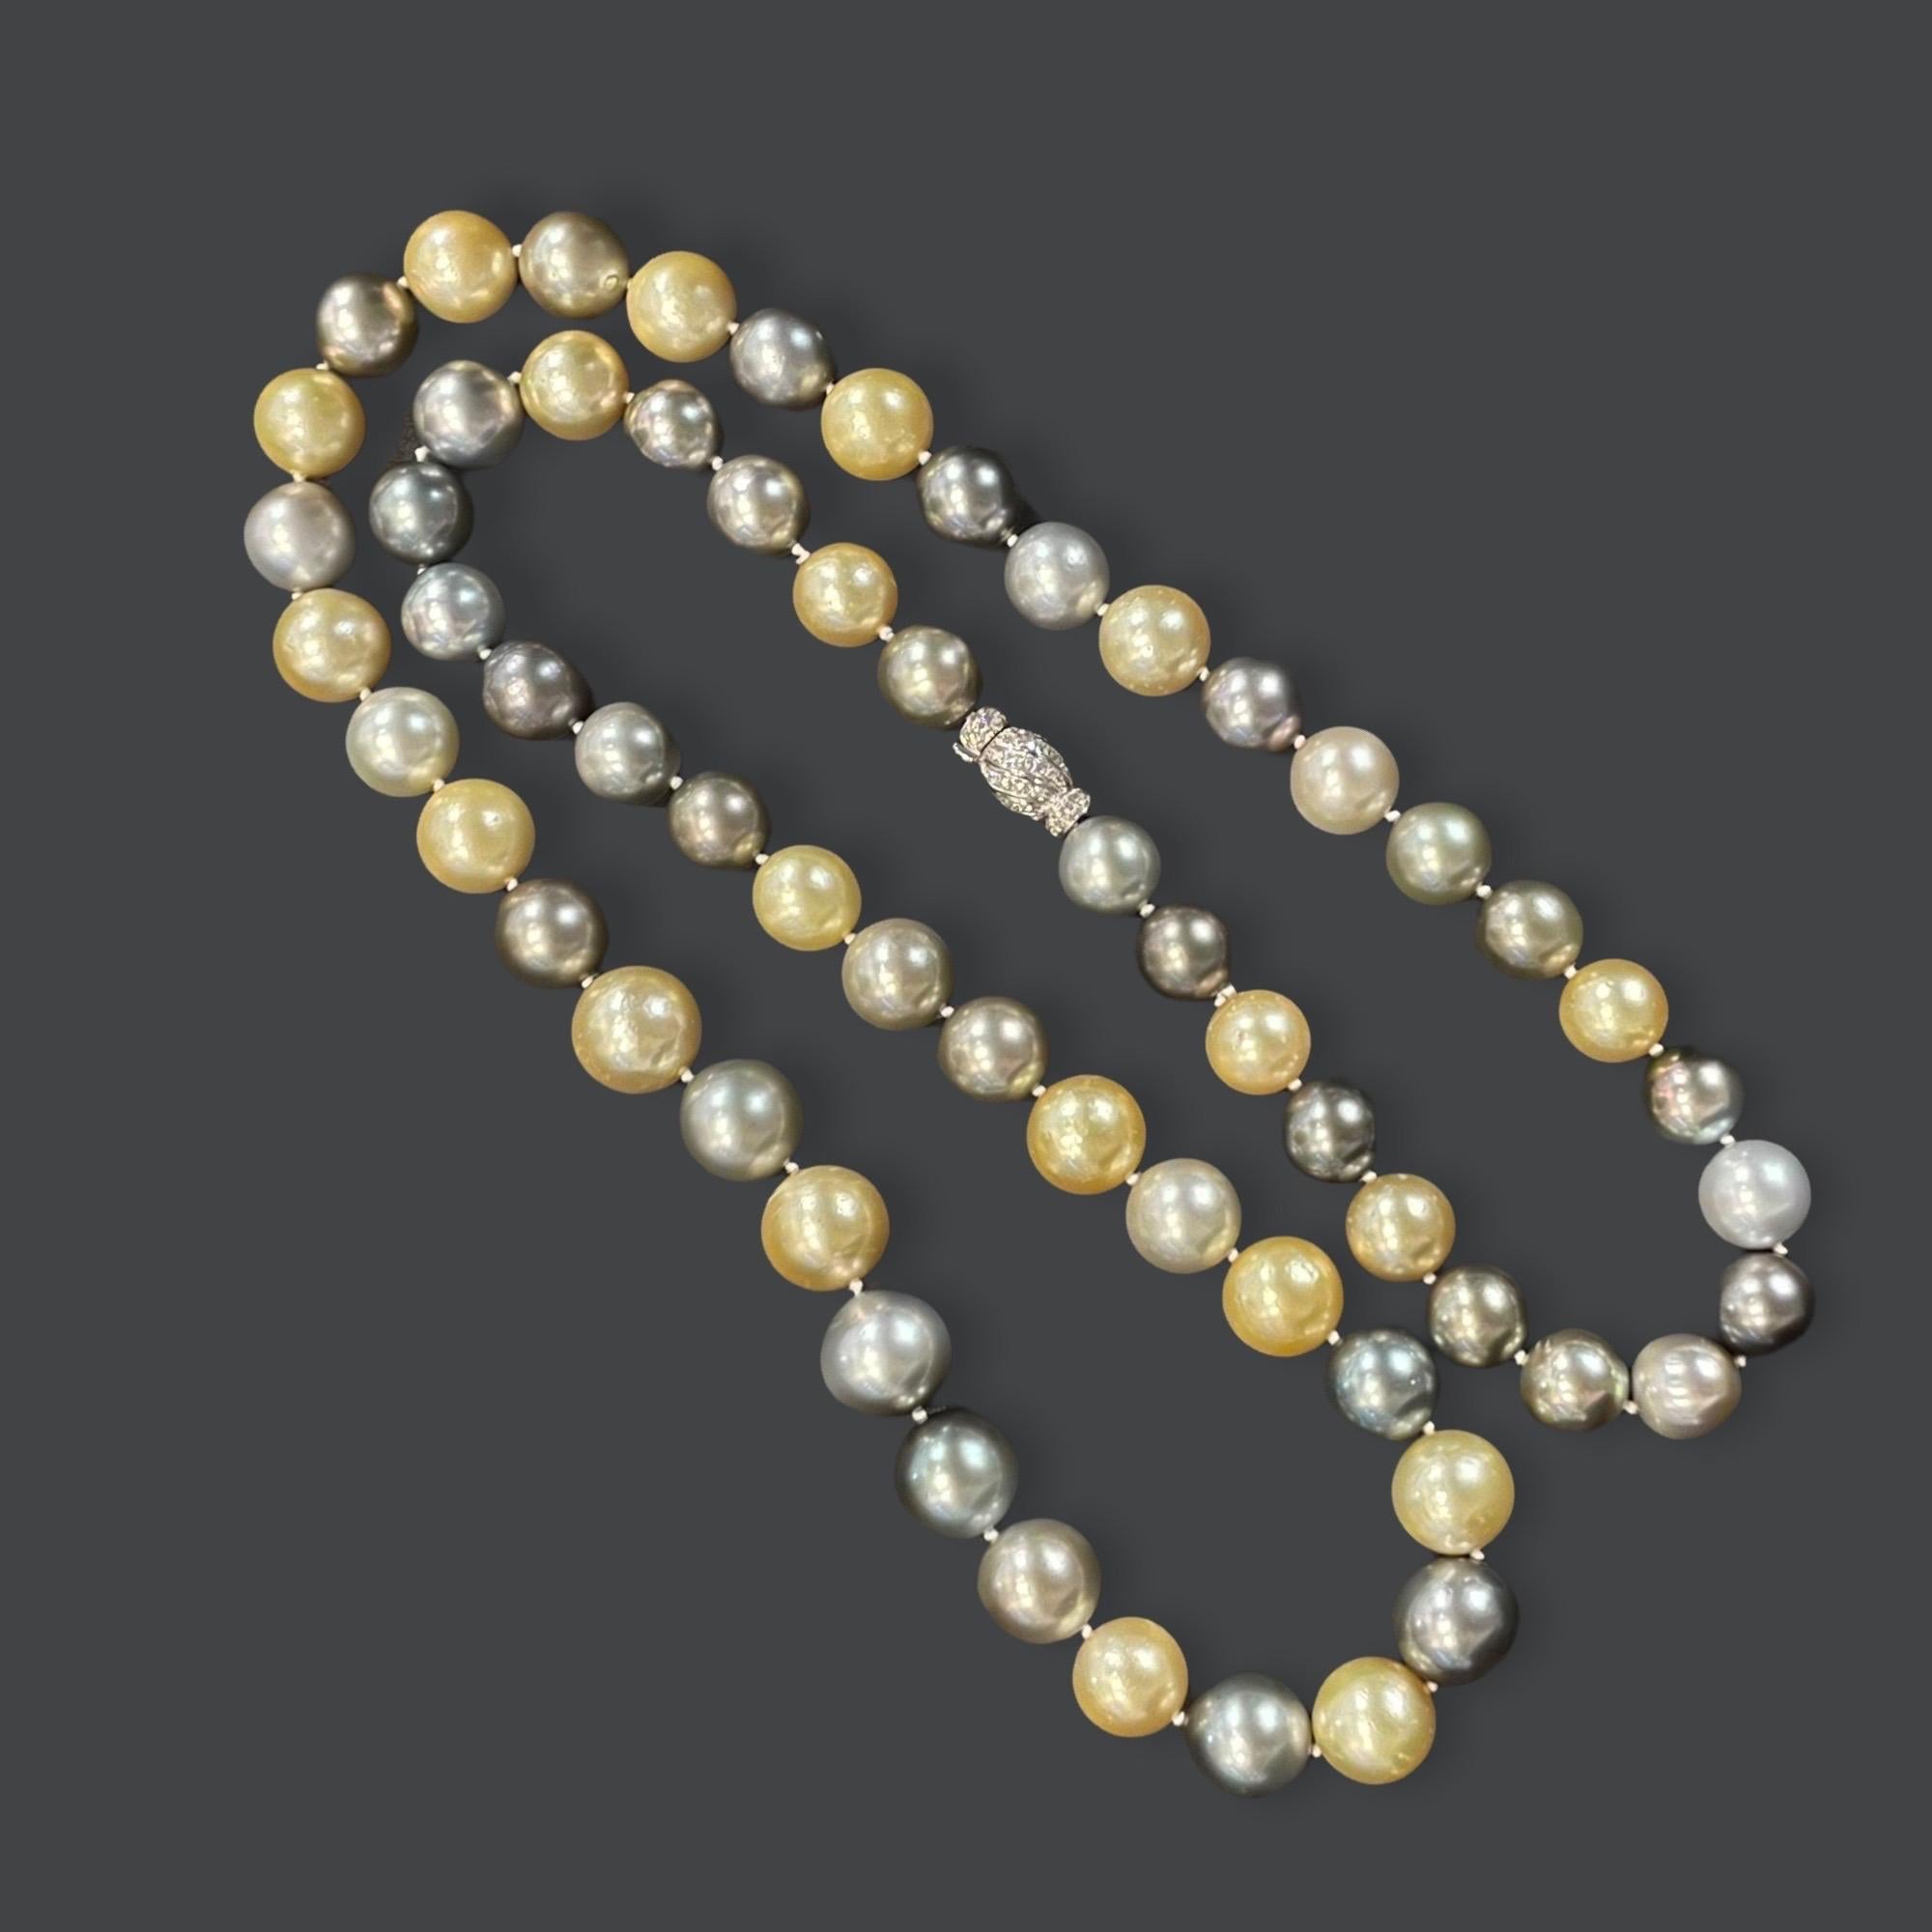 Exquisite mulit- farbigen (golden, grau, schwarz) Südseeperlen Halskette, die getragen werden kann lang oder doppelt abgedeckt, die 60 Perlen haben schönen Glanz und was macht sie so atemberaubend sind ihre erhebliche Größe von 13mm x 16mm. 